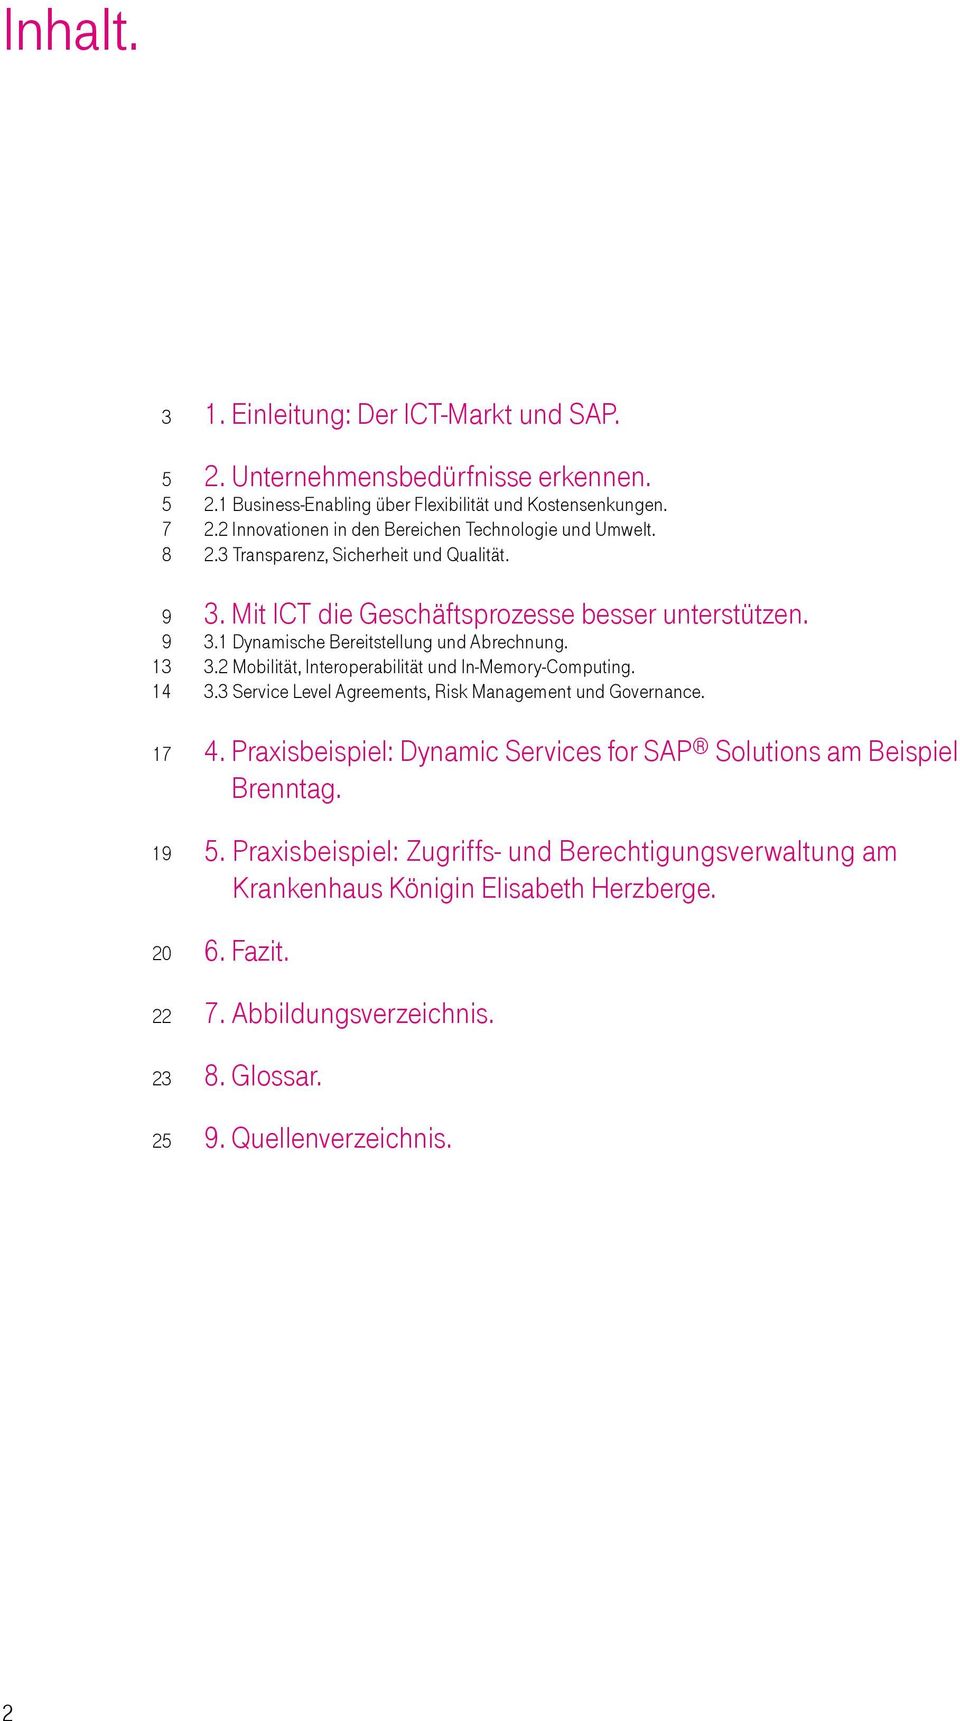 3.3 Service Level Agreements, Risk Management und Governance. 4. Praxisbeispiel: Dynamic Services for SAP Solutions am Beispiel Brenntag. 5.